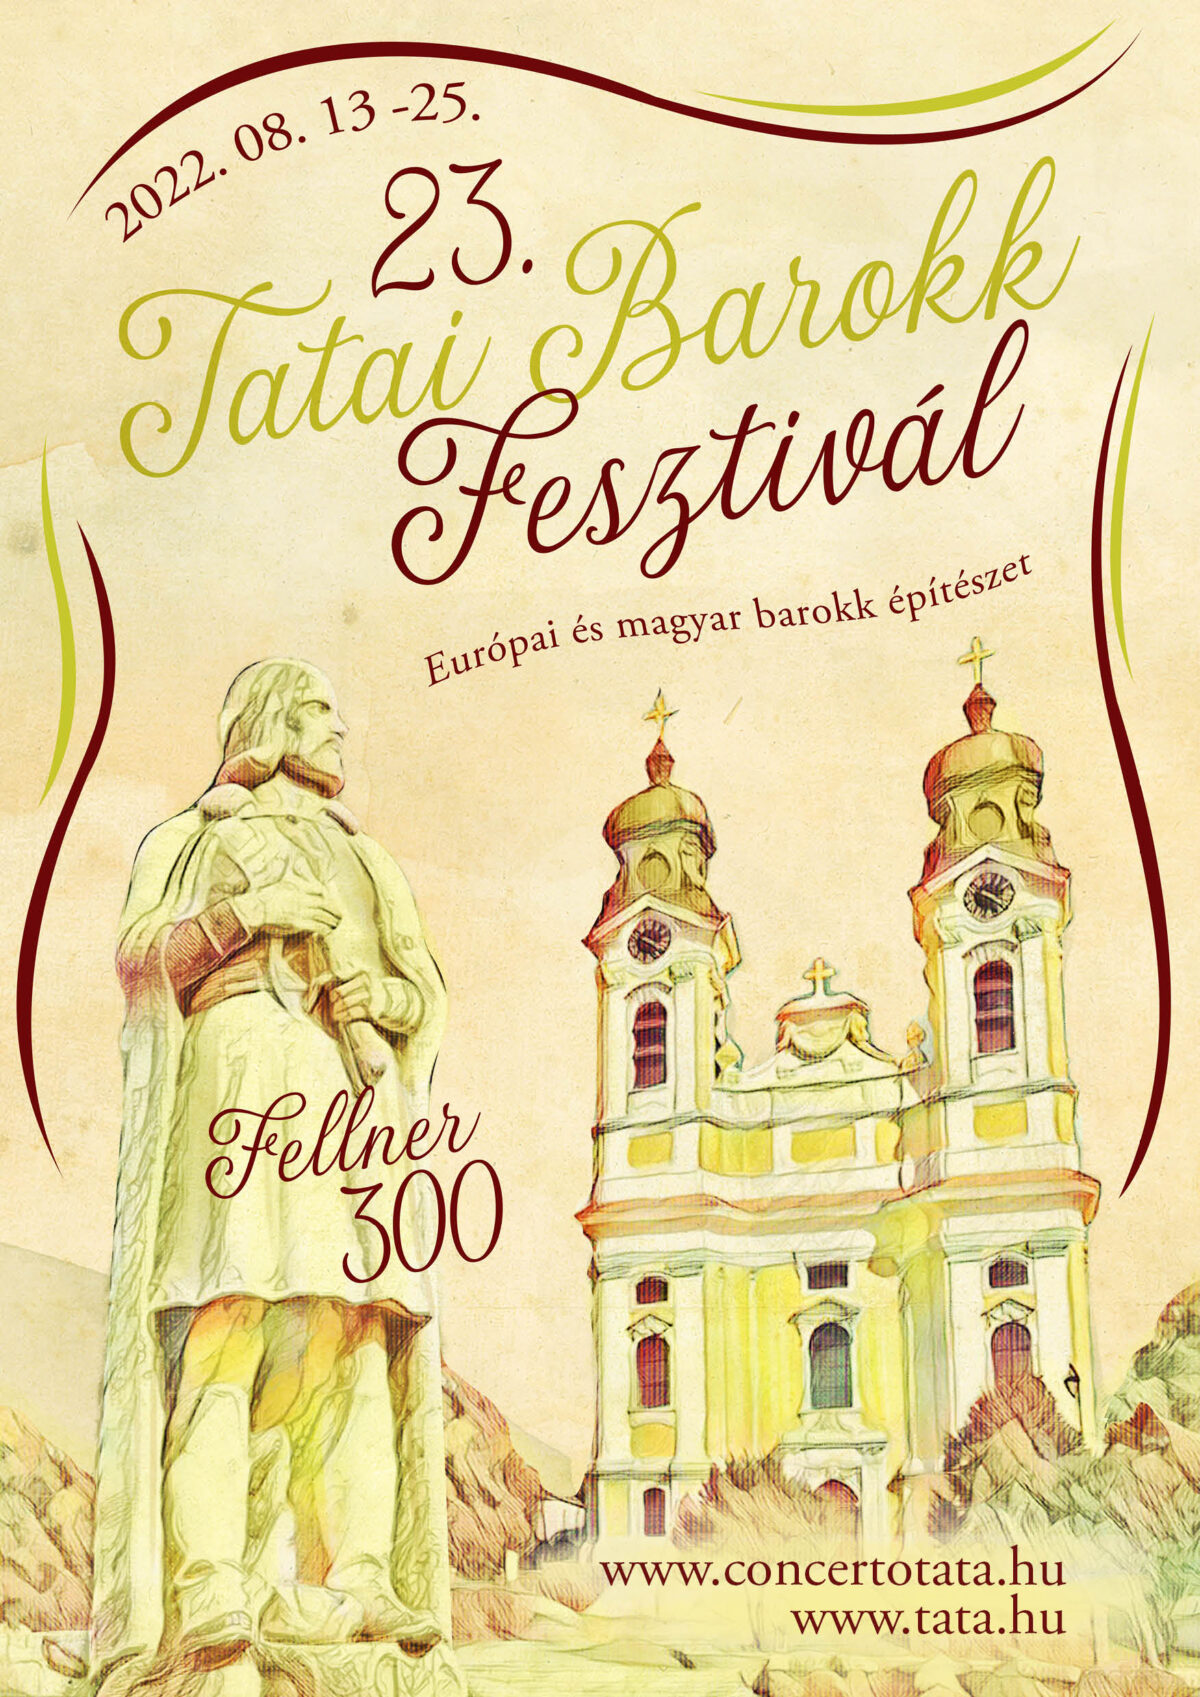 Kiemelt kép a 23. Tatai Barokk Fesztivál augusztus 13-tól 25-ig című bejegyzéshez